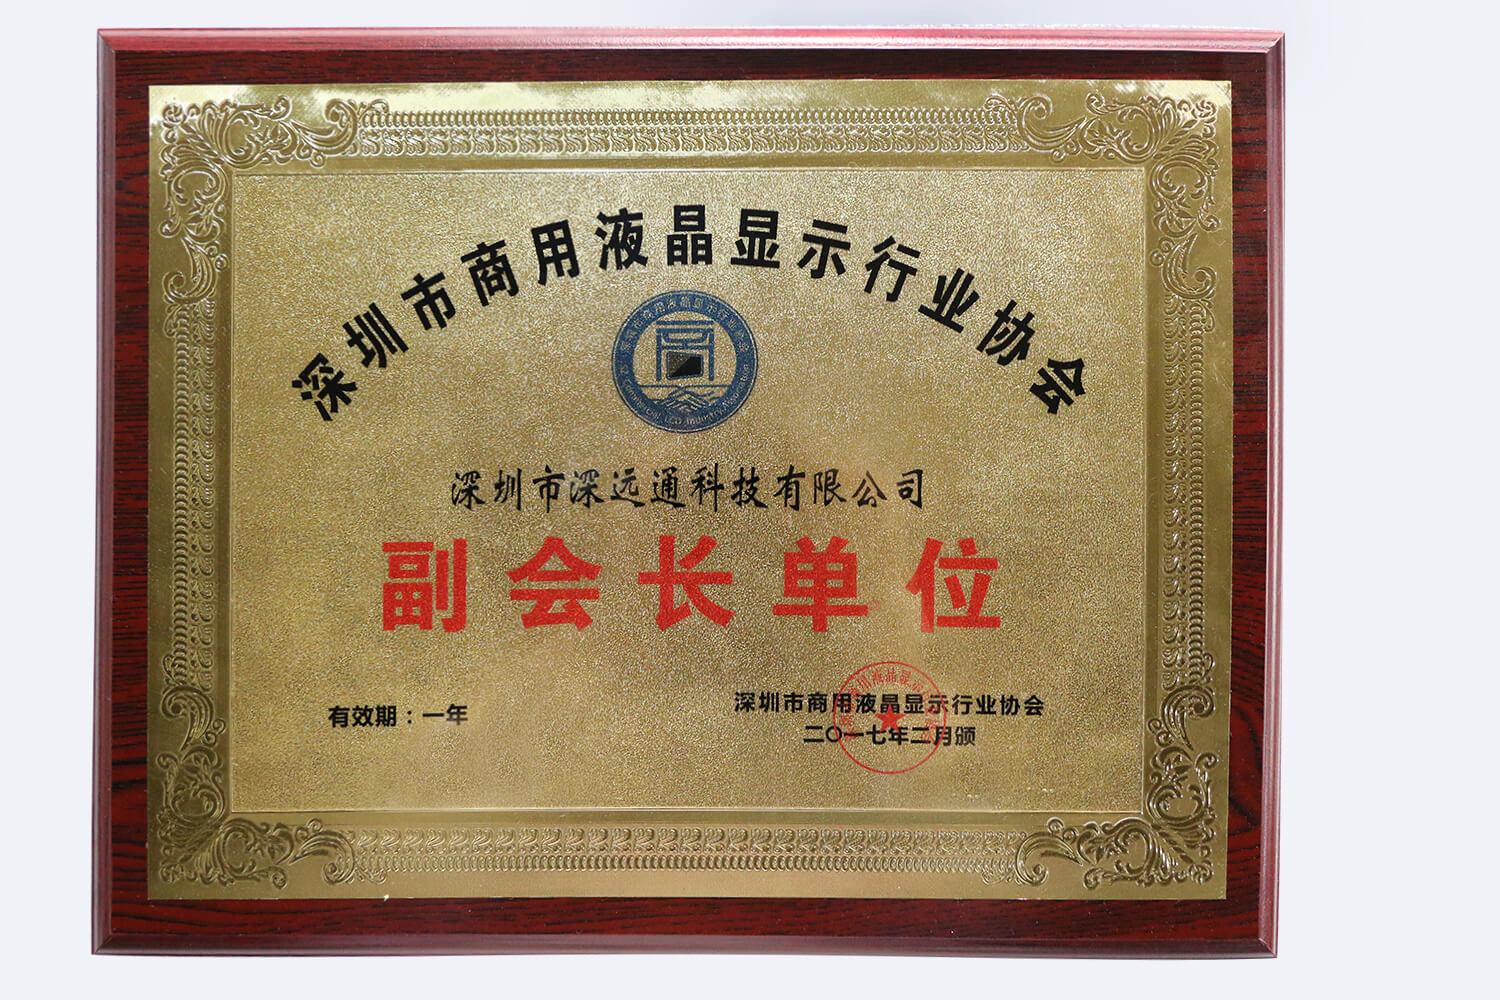 深圳市商用液晶显示行业协会副会长单位